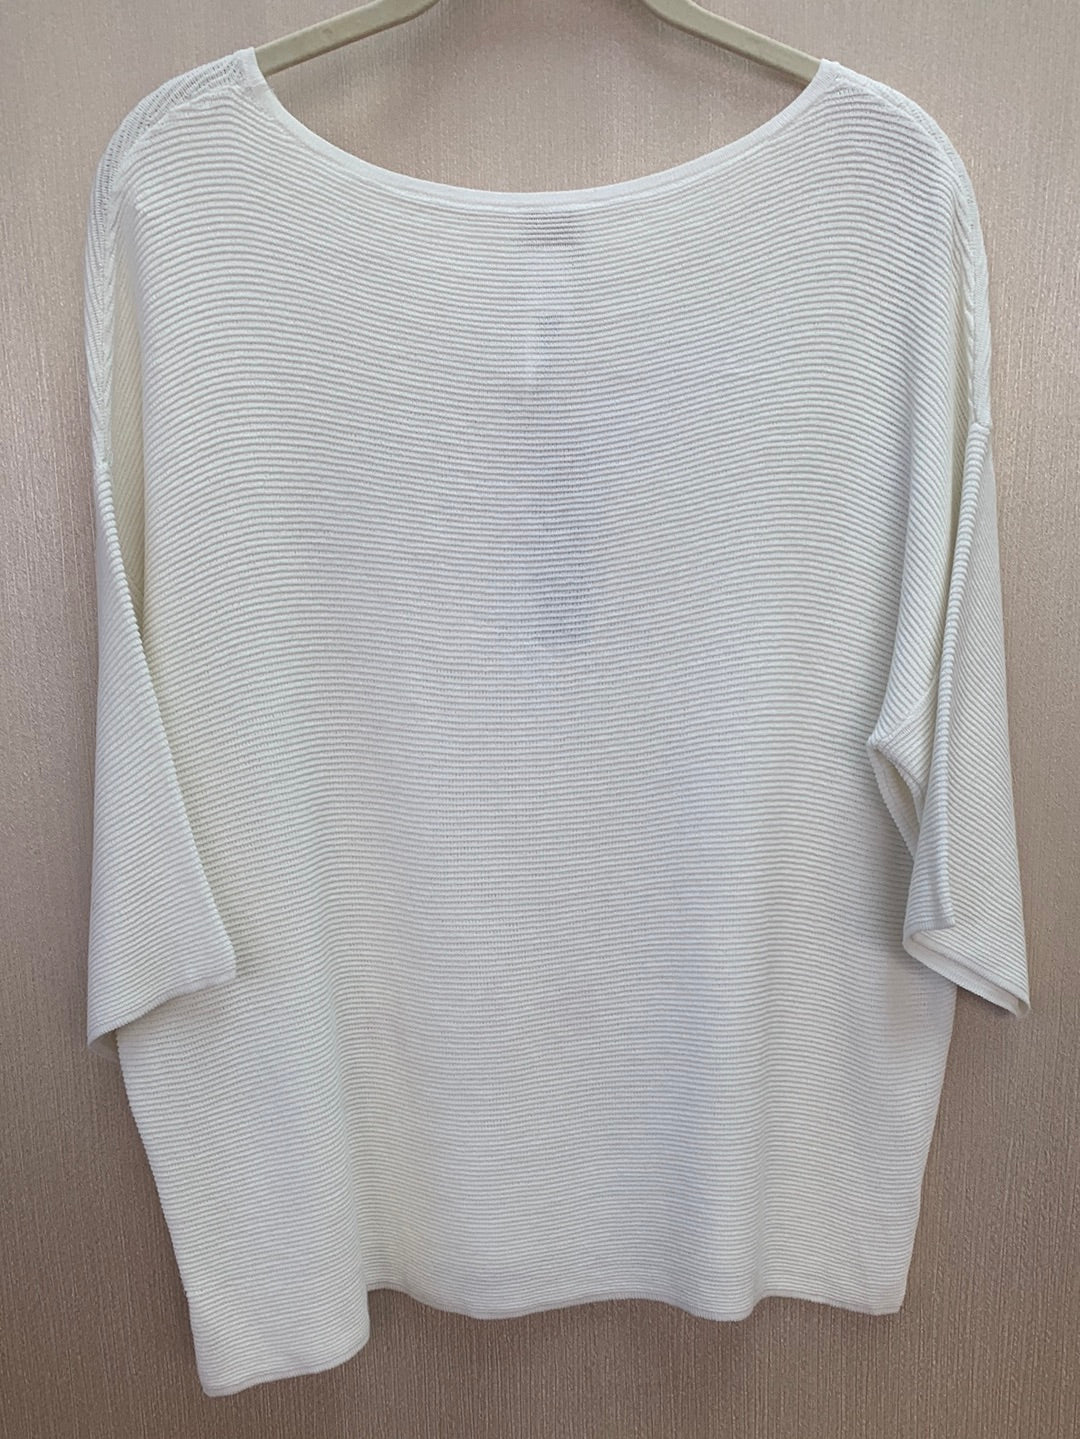 NWT - CHICO'S ecru Side Button Nicolette Pullover Sweater - 1 | 8/10 M